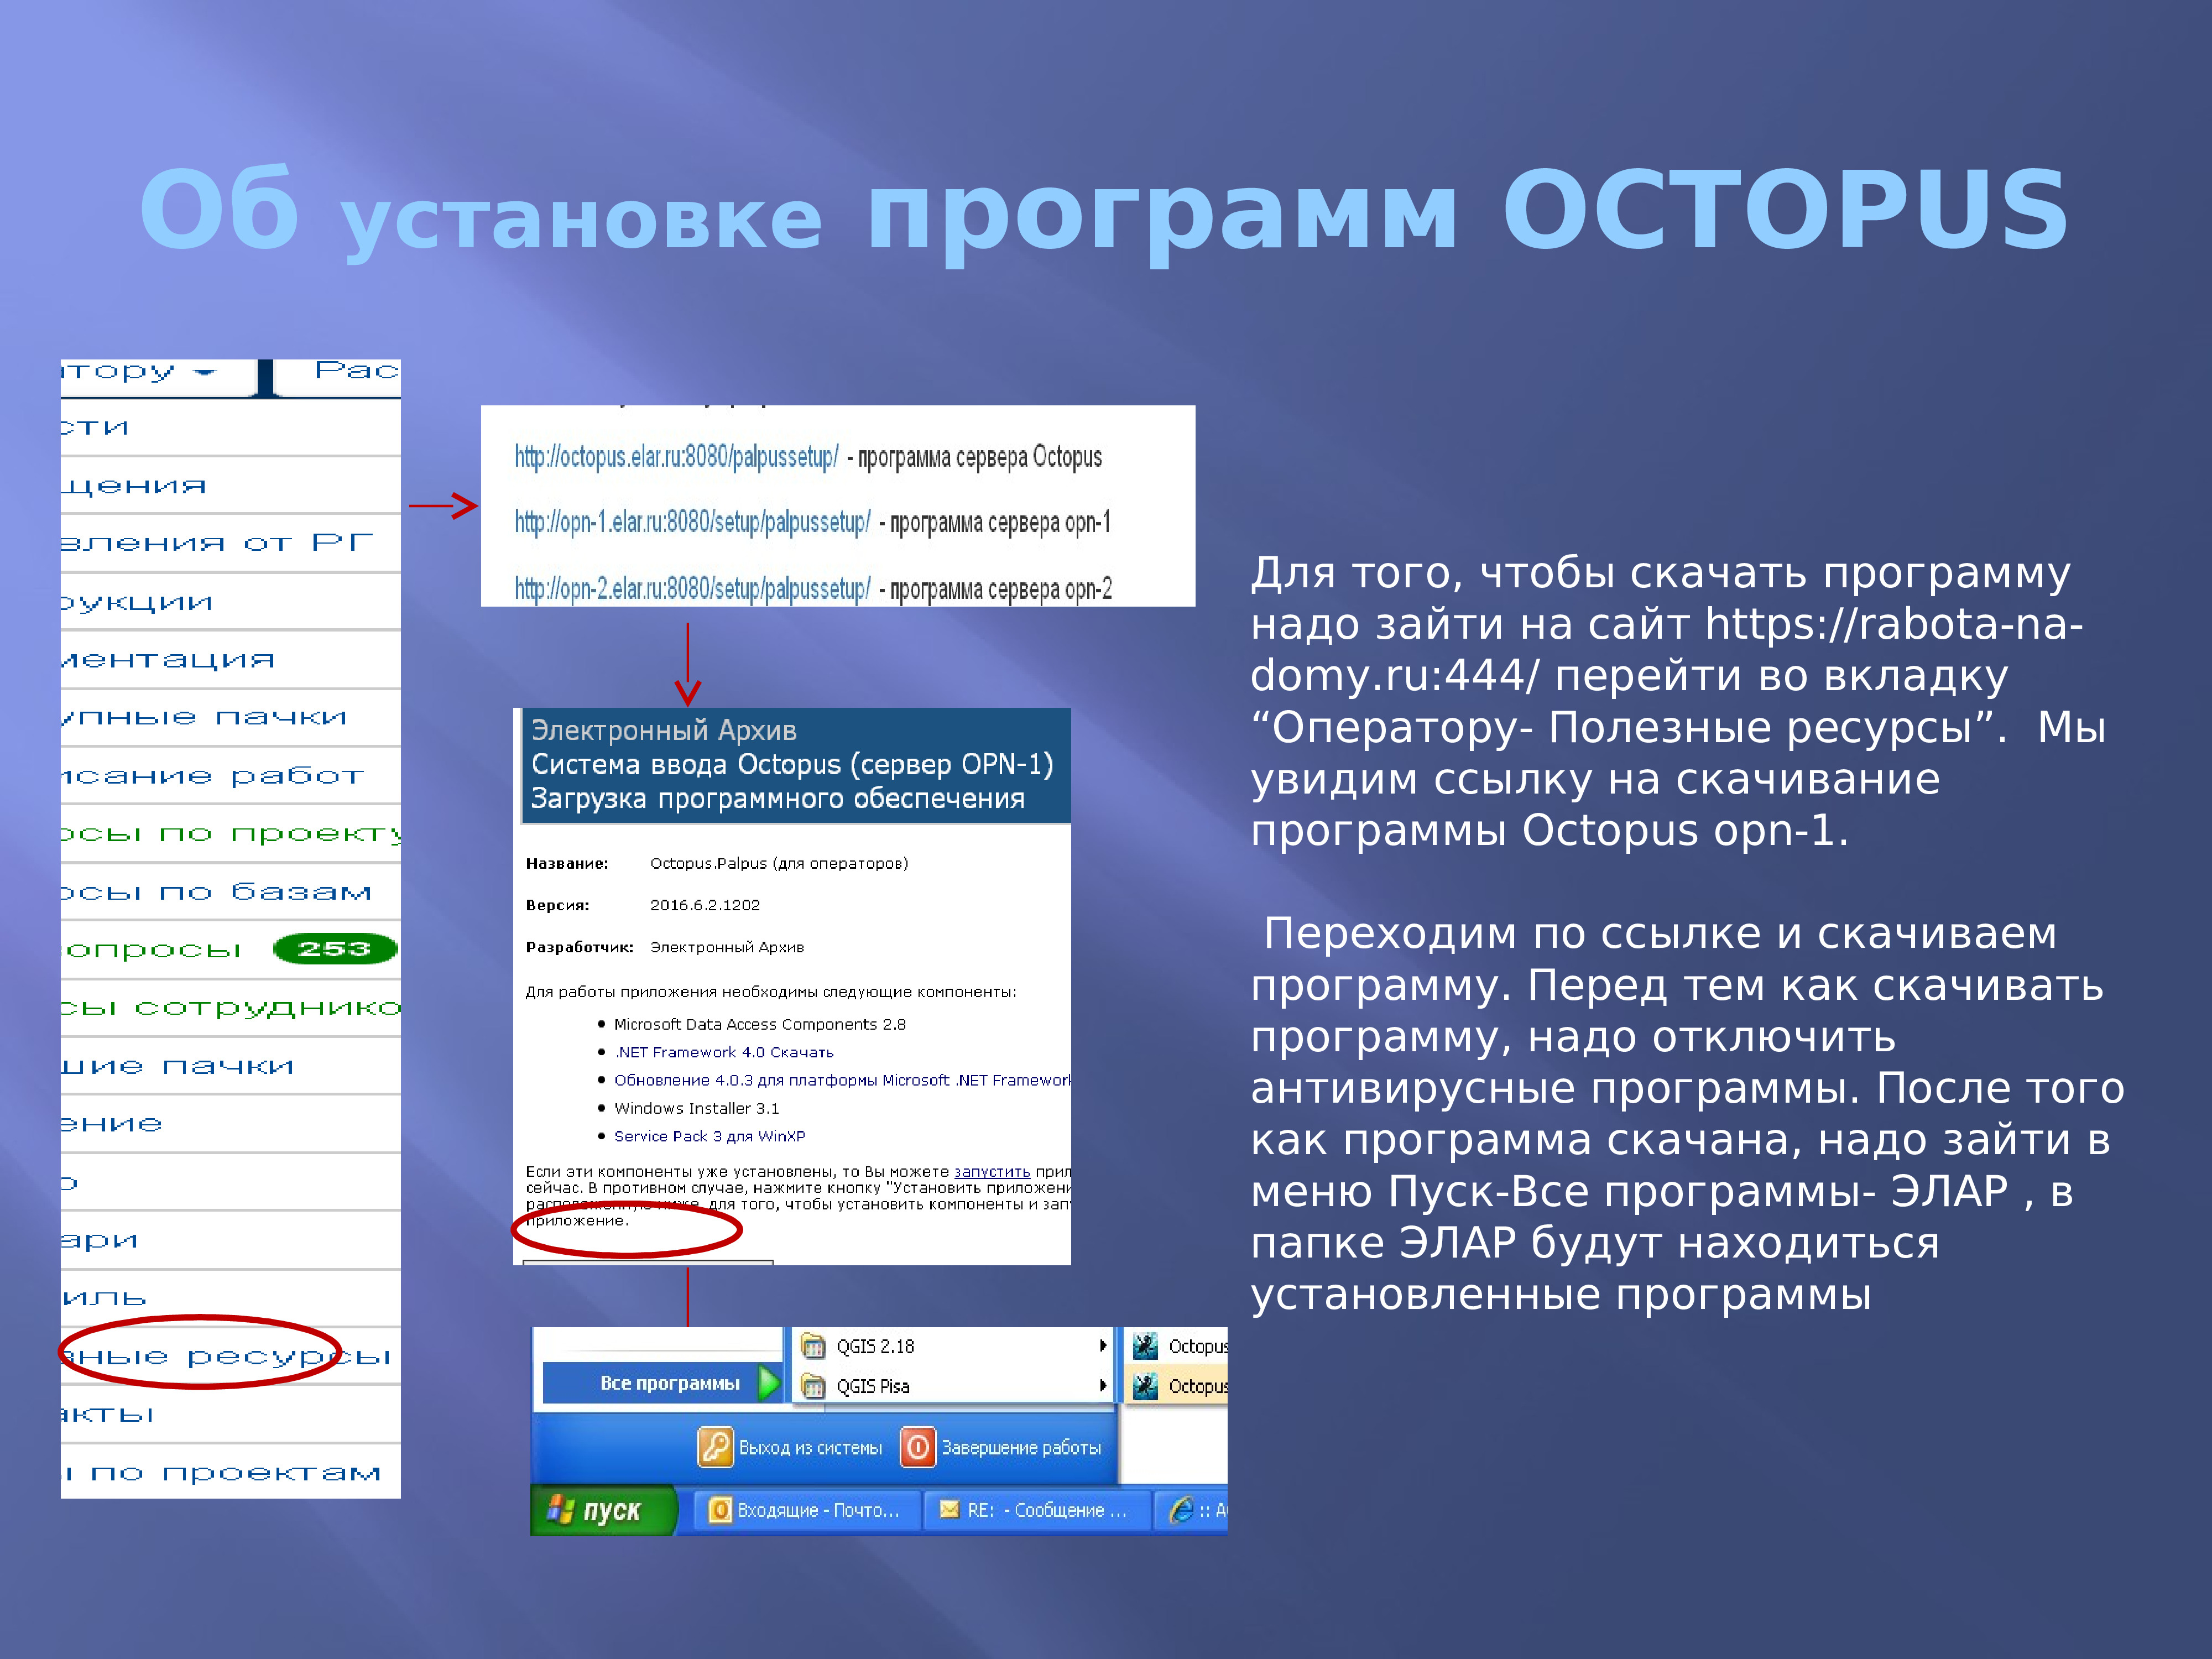 Необходимо зайти на сайт. Октопус программа. Octopus программа interface. Программа осьминог. Специальное программное обеспечение: «Octopus ra».